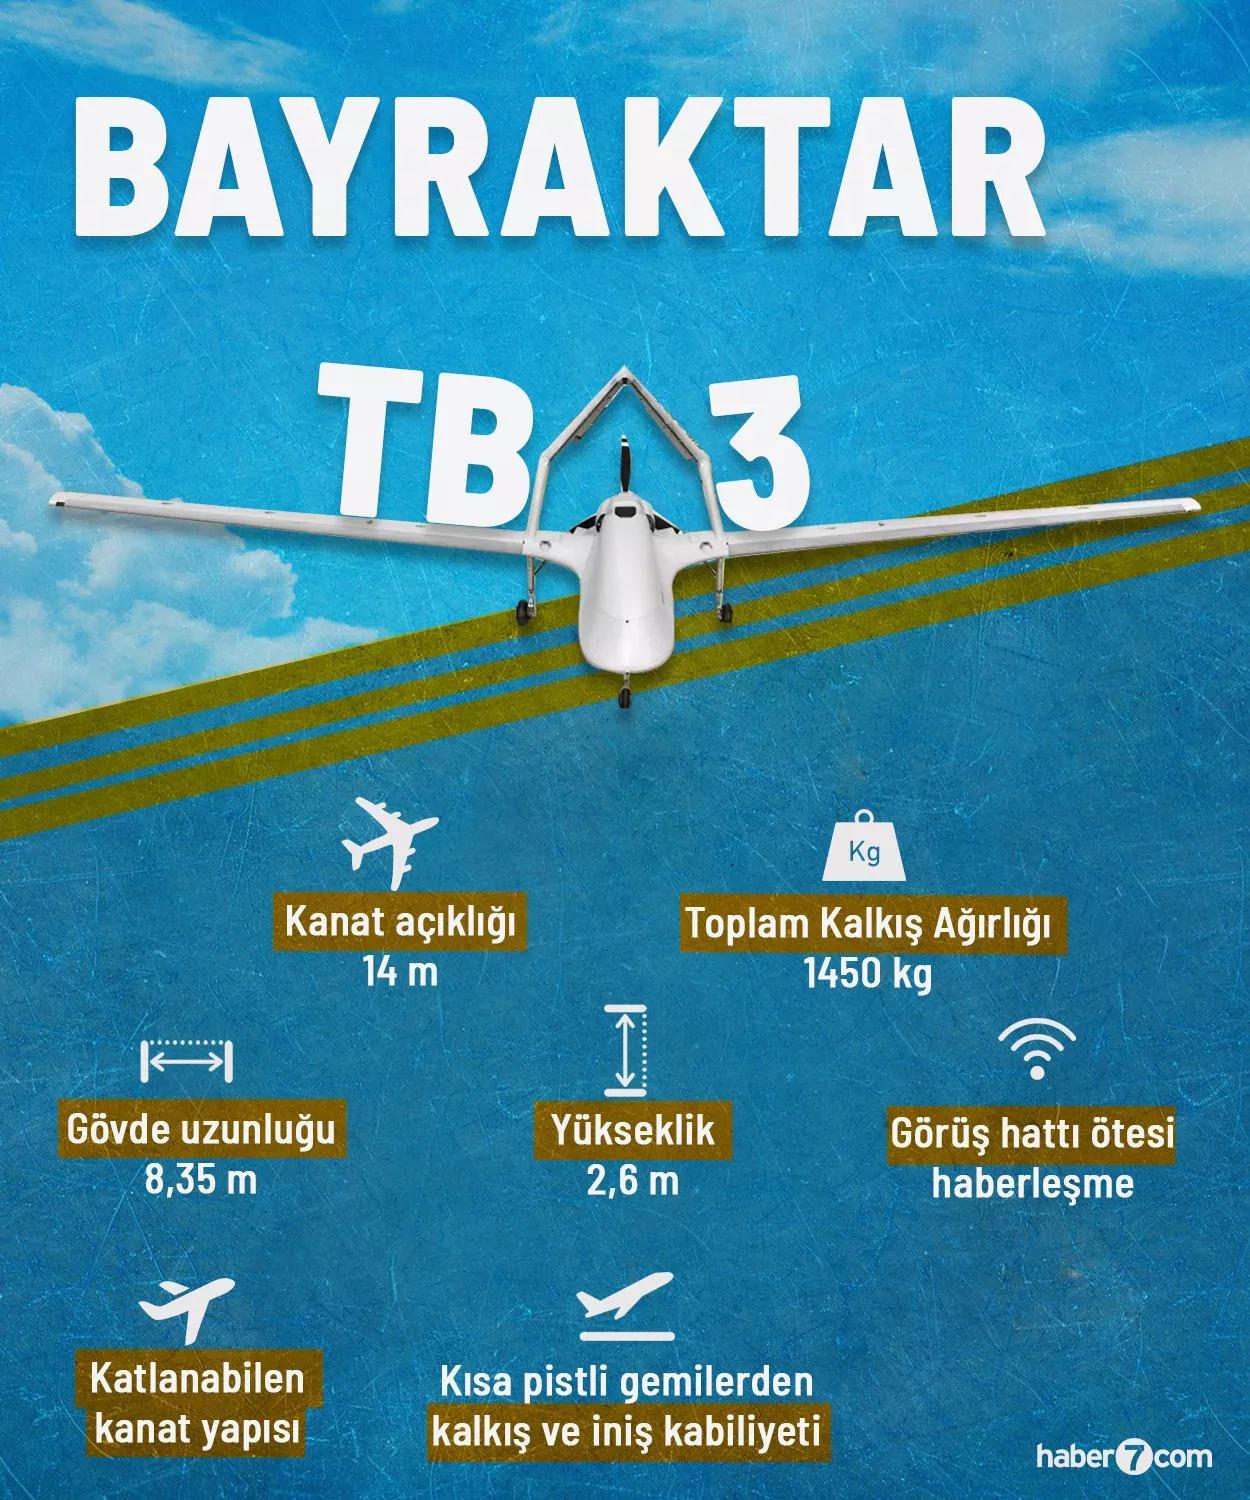 BAYRAKTAR TB3'ün özellikleri